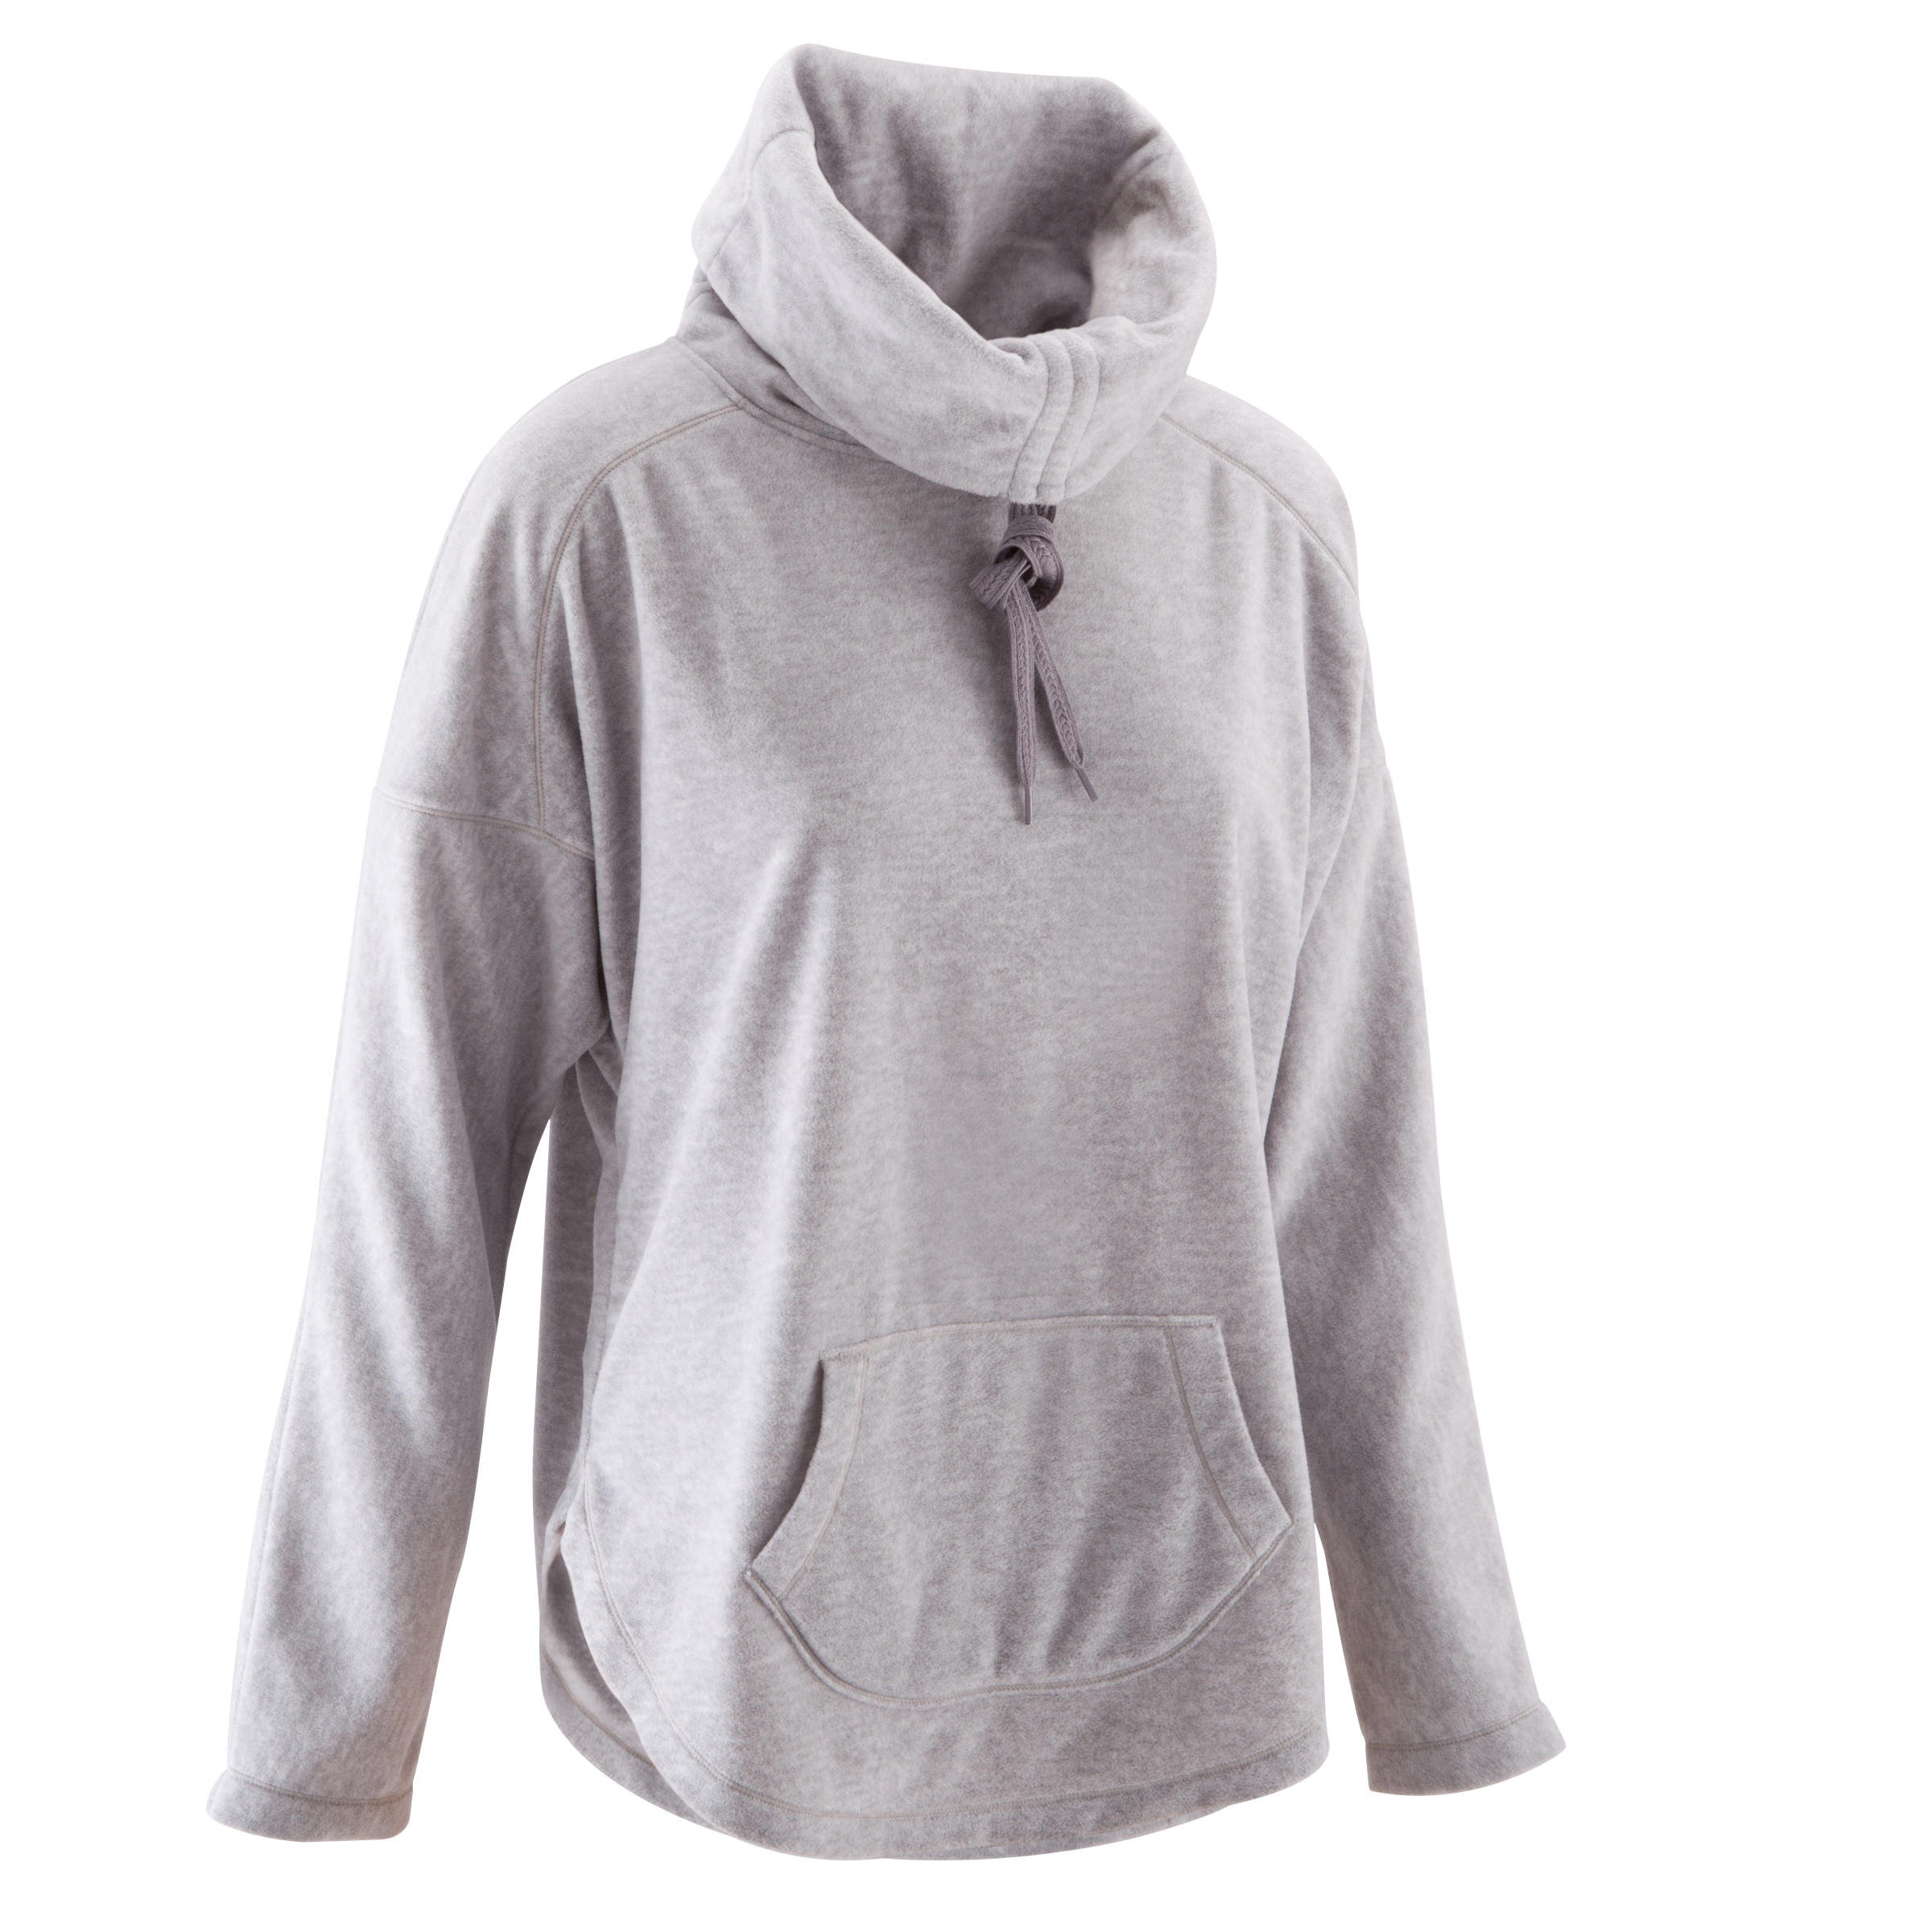 DOMYOS Women's Relaxation Yoga Fleece Sweatshirt - Grey